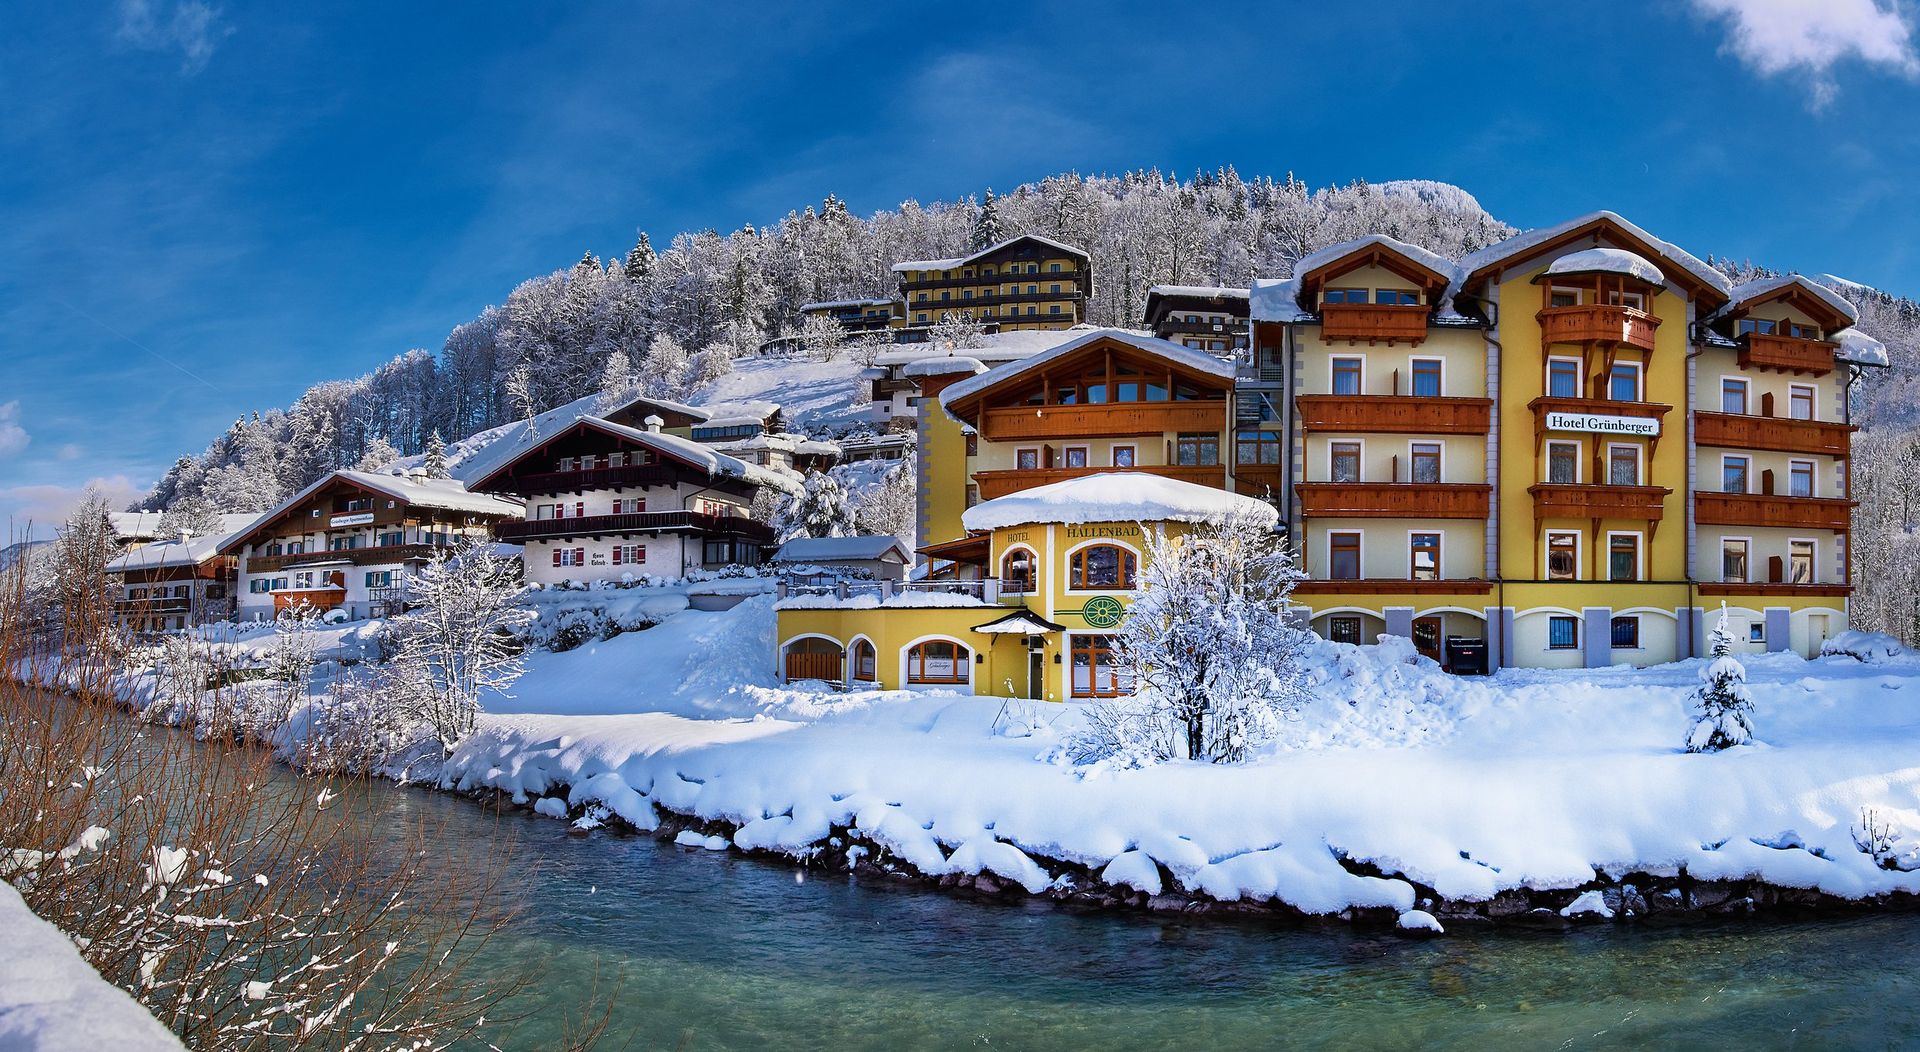 Meer info over Hotel Grünberger  bij Wintertrex